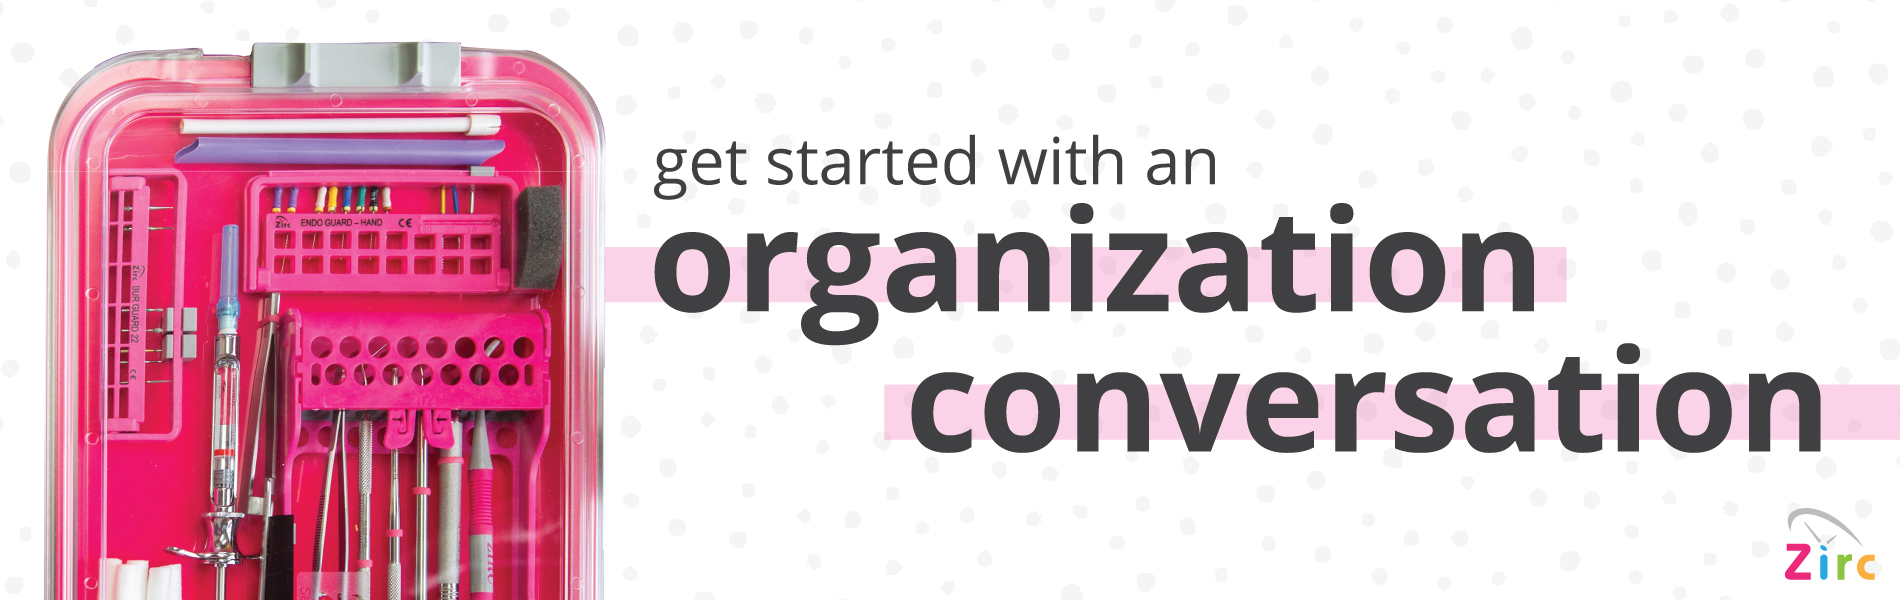 Organization-Converstaion_Website-Banner_AUG20.jpg